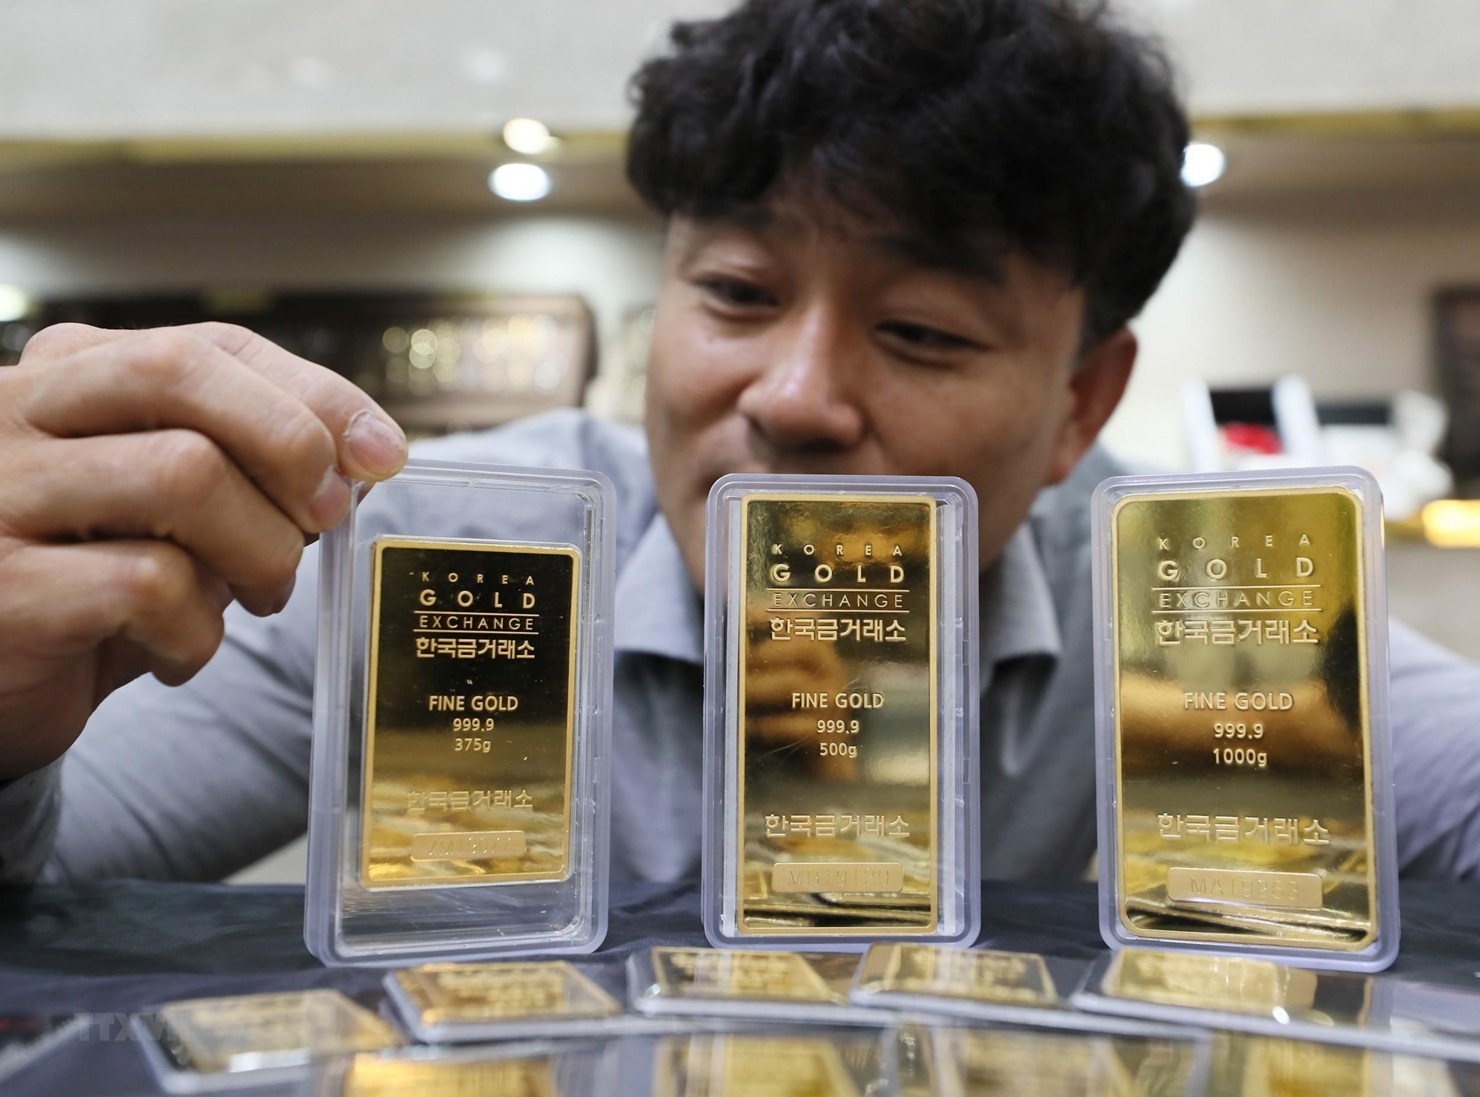 Giá vàng ở thị trường châu Á áp sát mức cao nhất trong gần 8 năm.